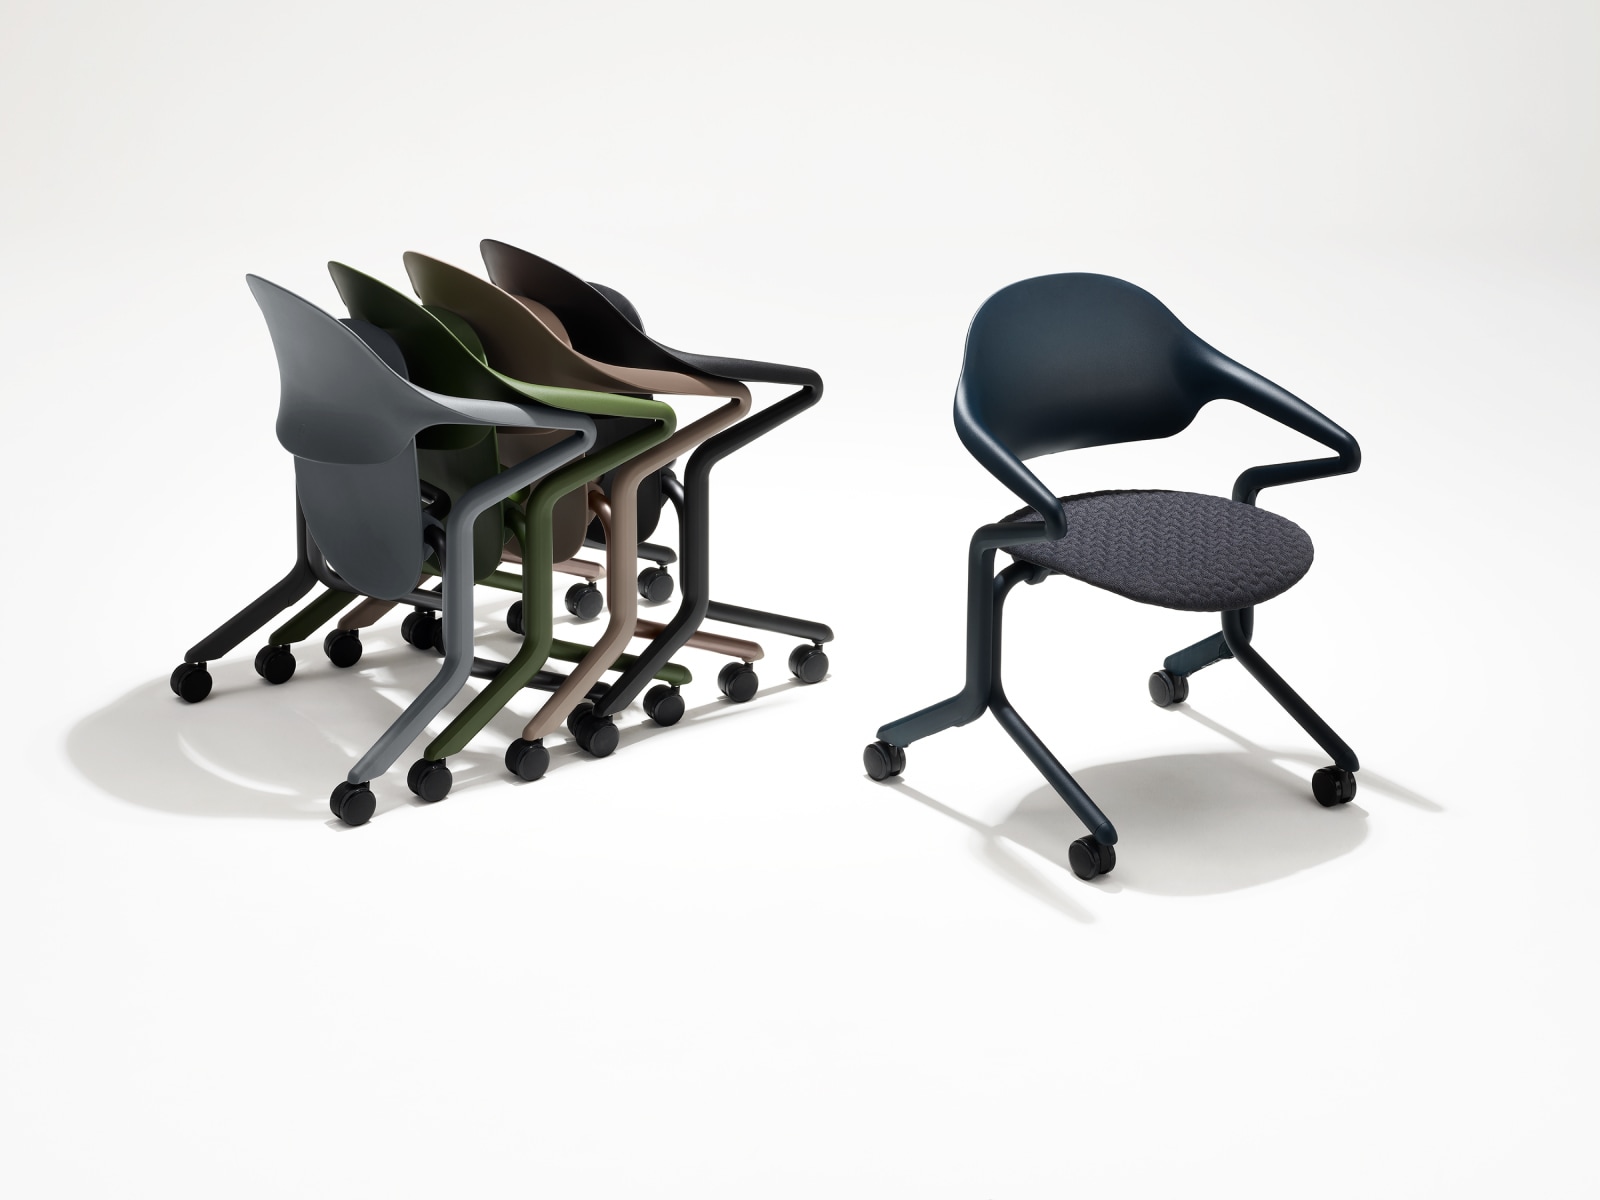 Vier Fuld Nesting-stoelen in verschillende kleuren en afwerkingen in een groep genest naast een afzonderlijke Fuld Nesting-stoel in Nightfall met 3D Knit-textiel.